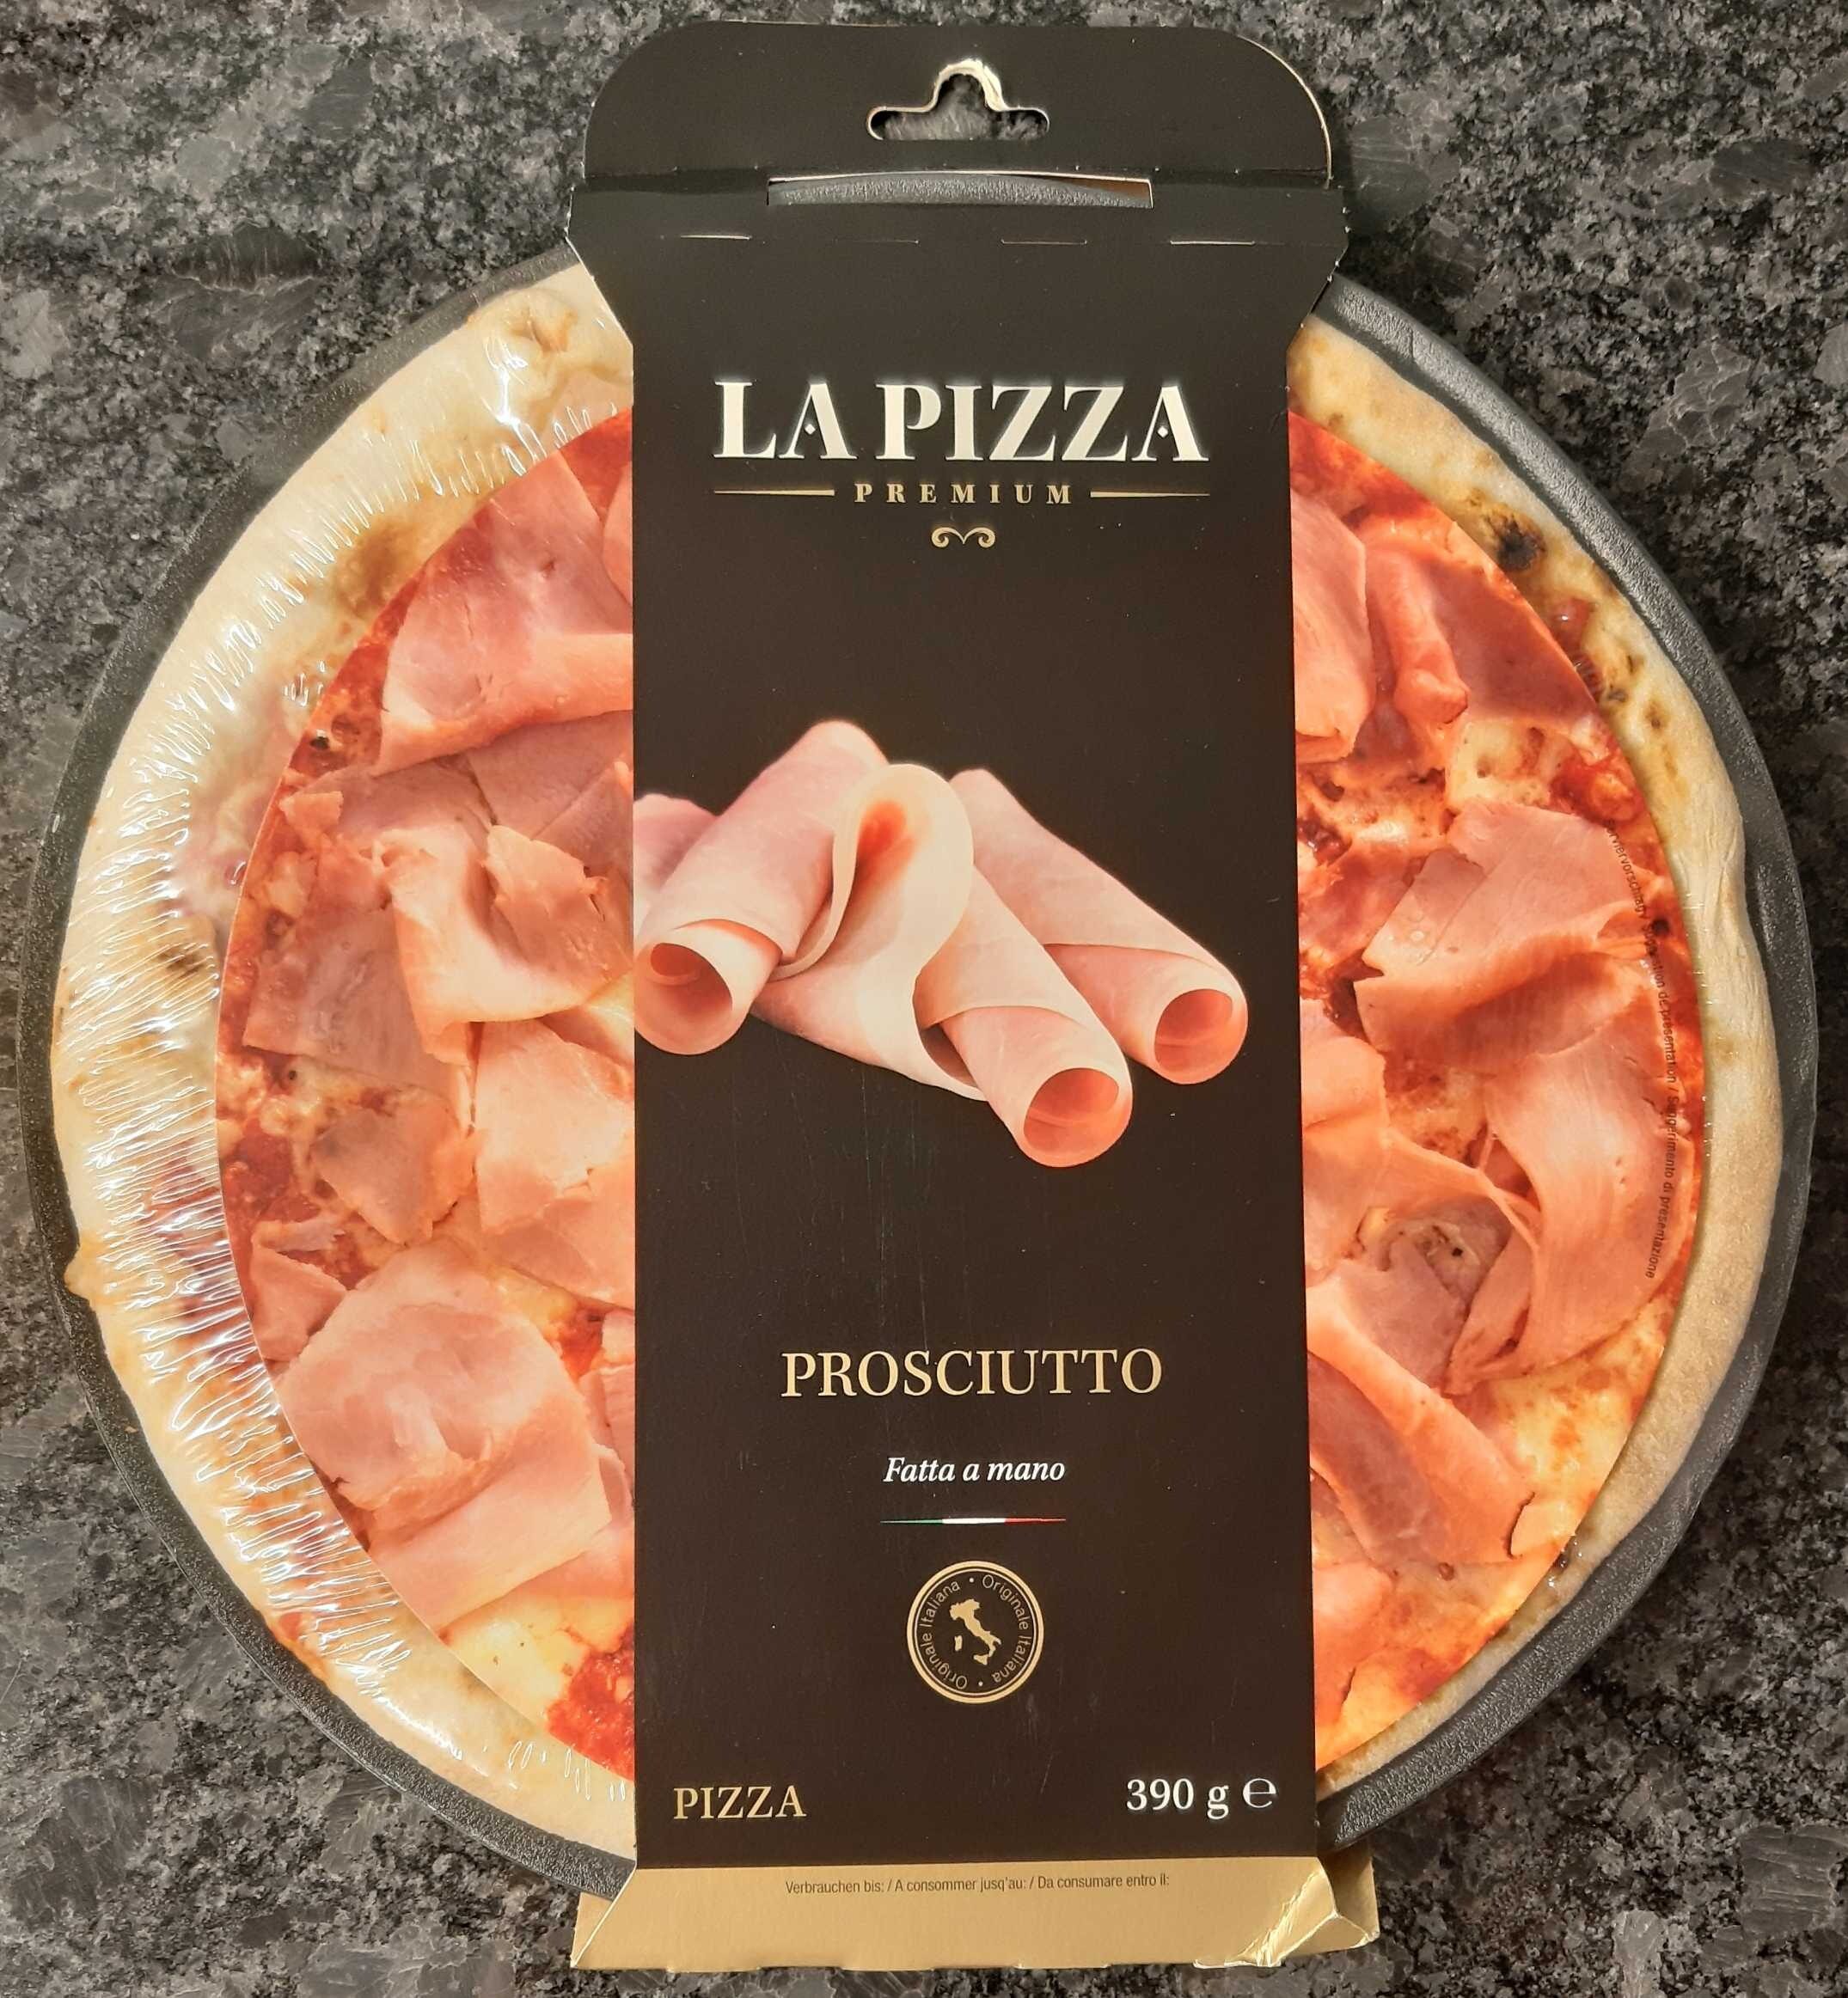 La Pizza Premium - Prosciutto Fatta a mano - Product